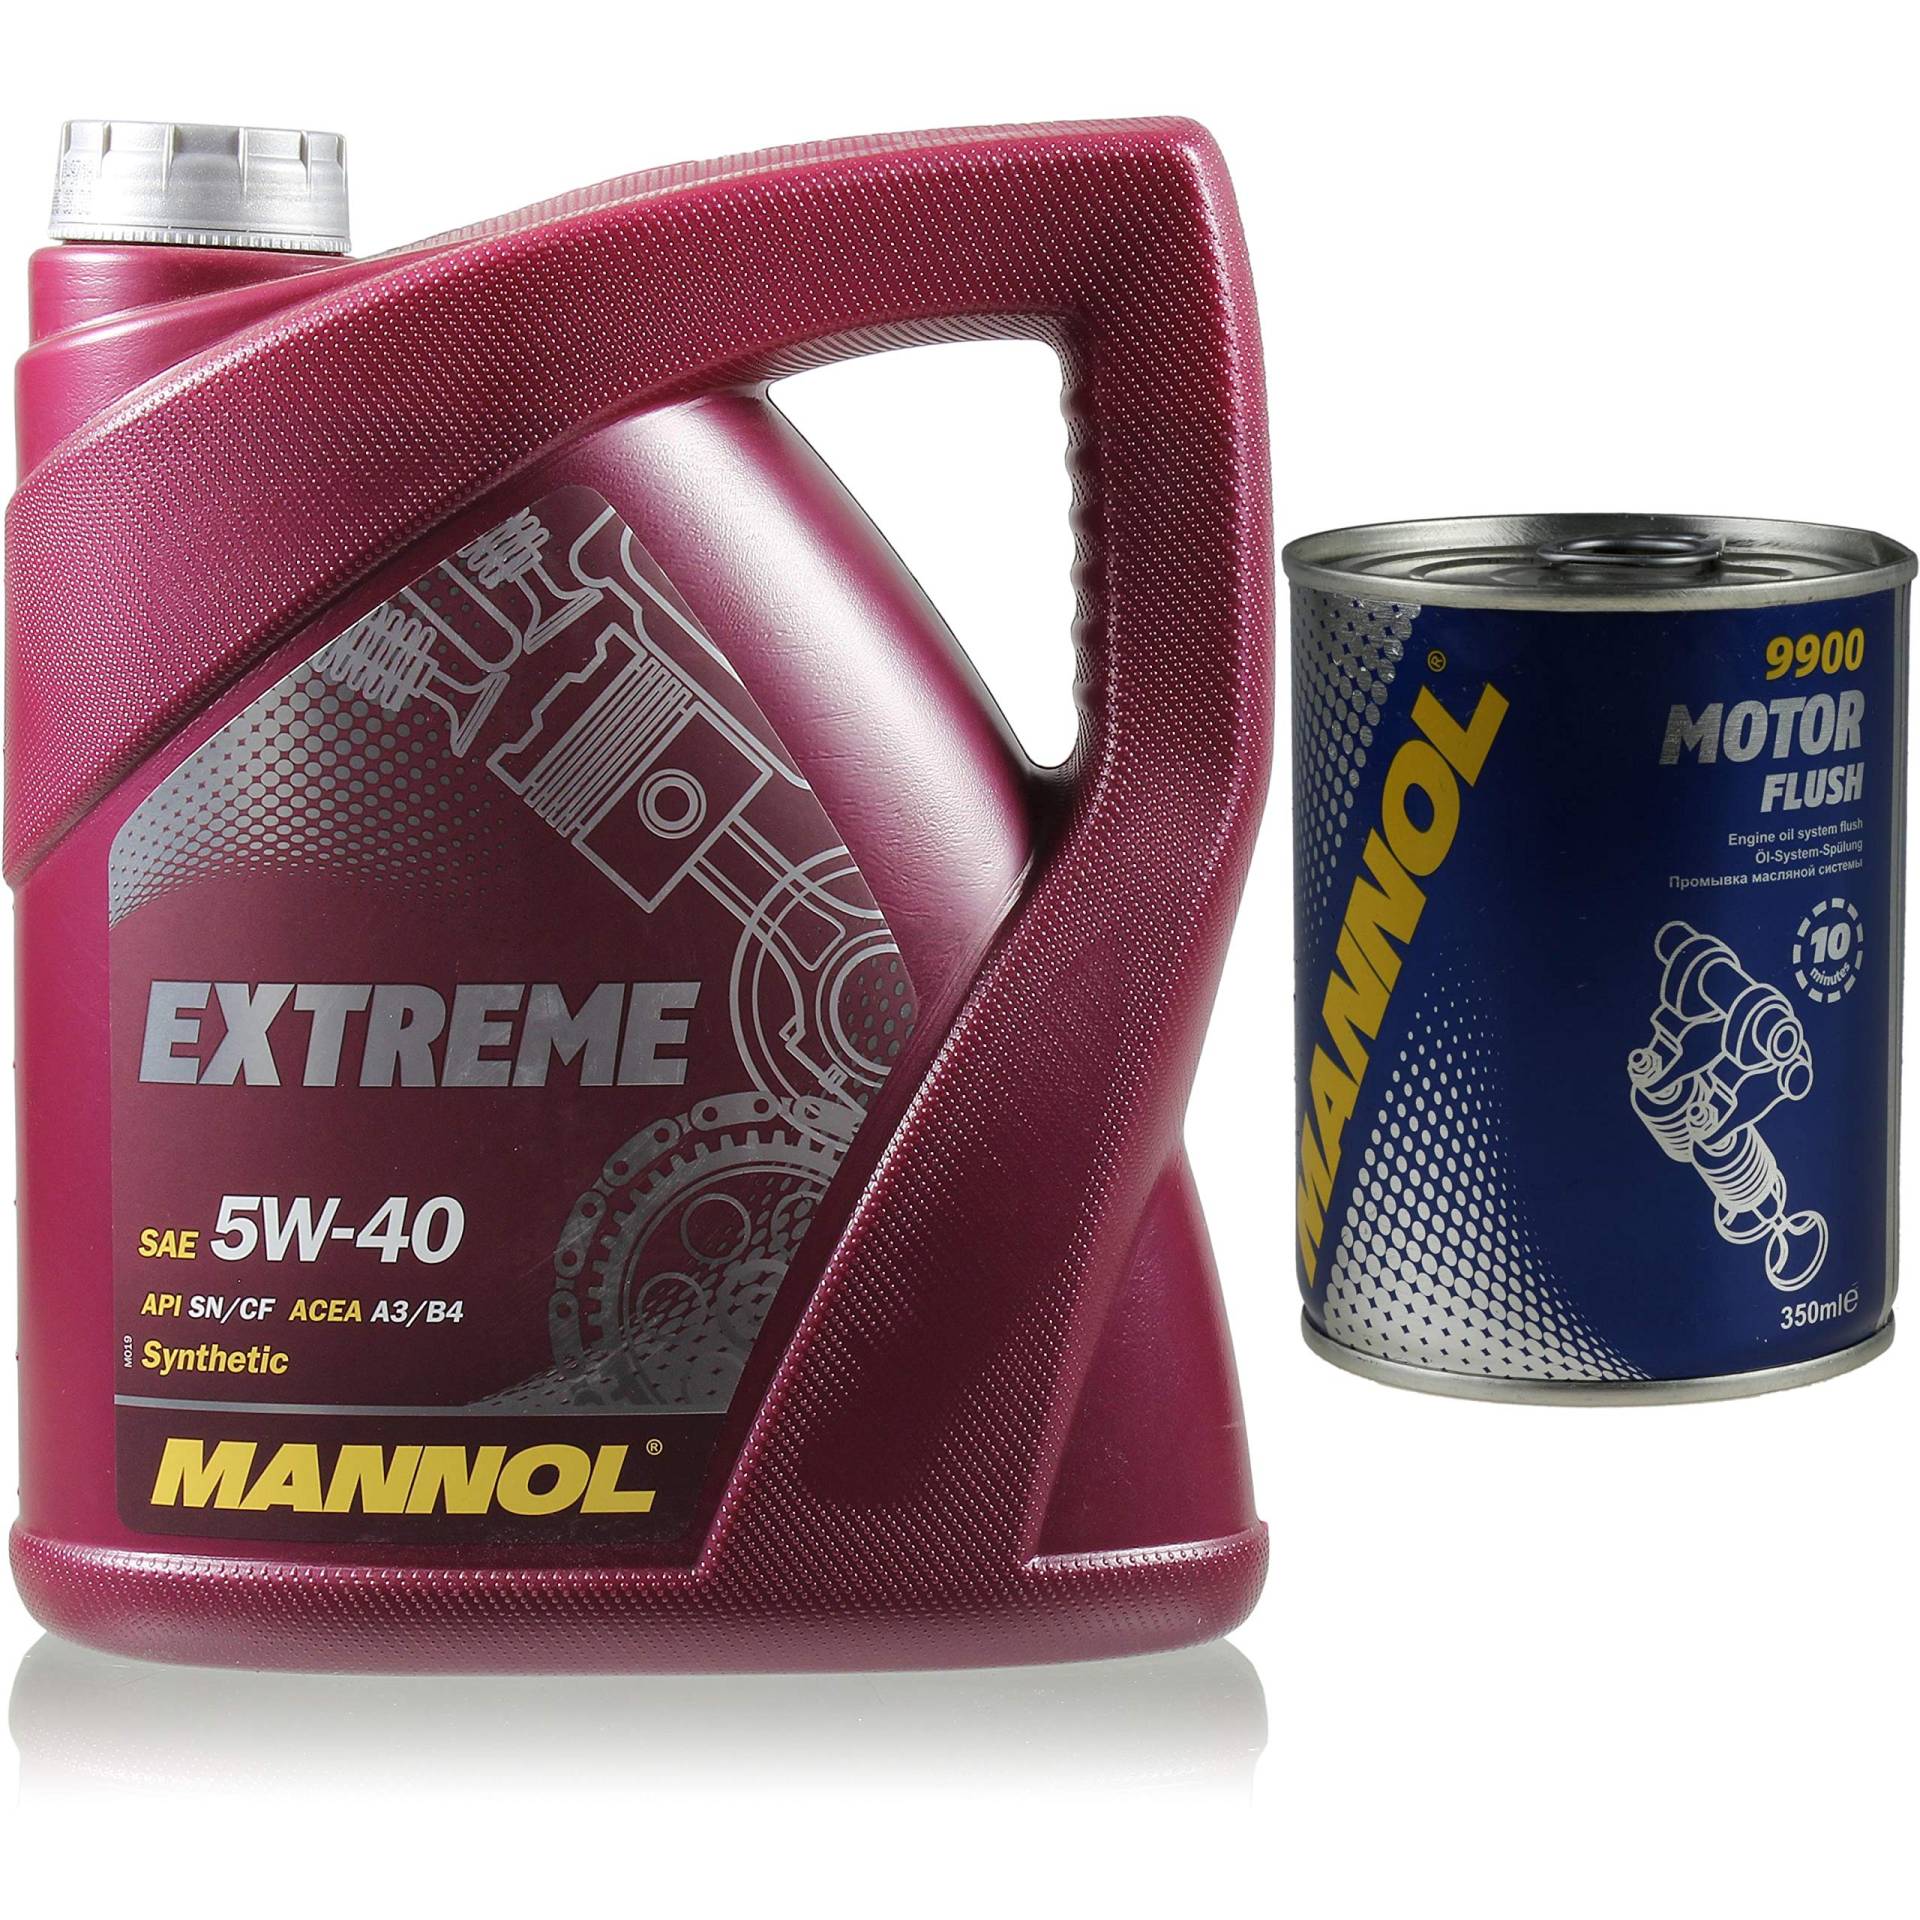 4L MANNOL Extreme 5W-40 API SN/CF Öl Motoröl MN7915-4 Motorspülung Motor Flush von Diederichs